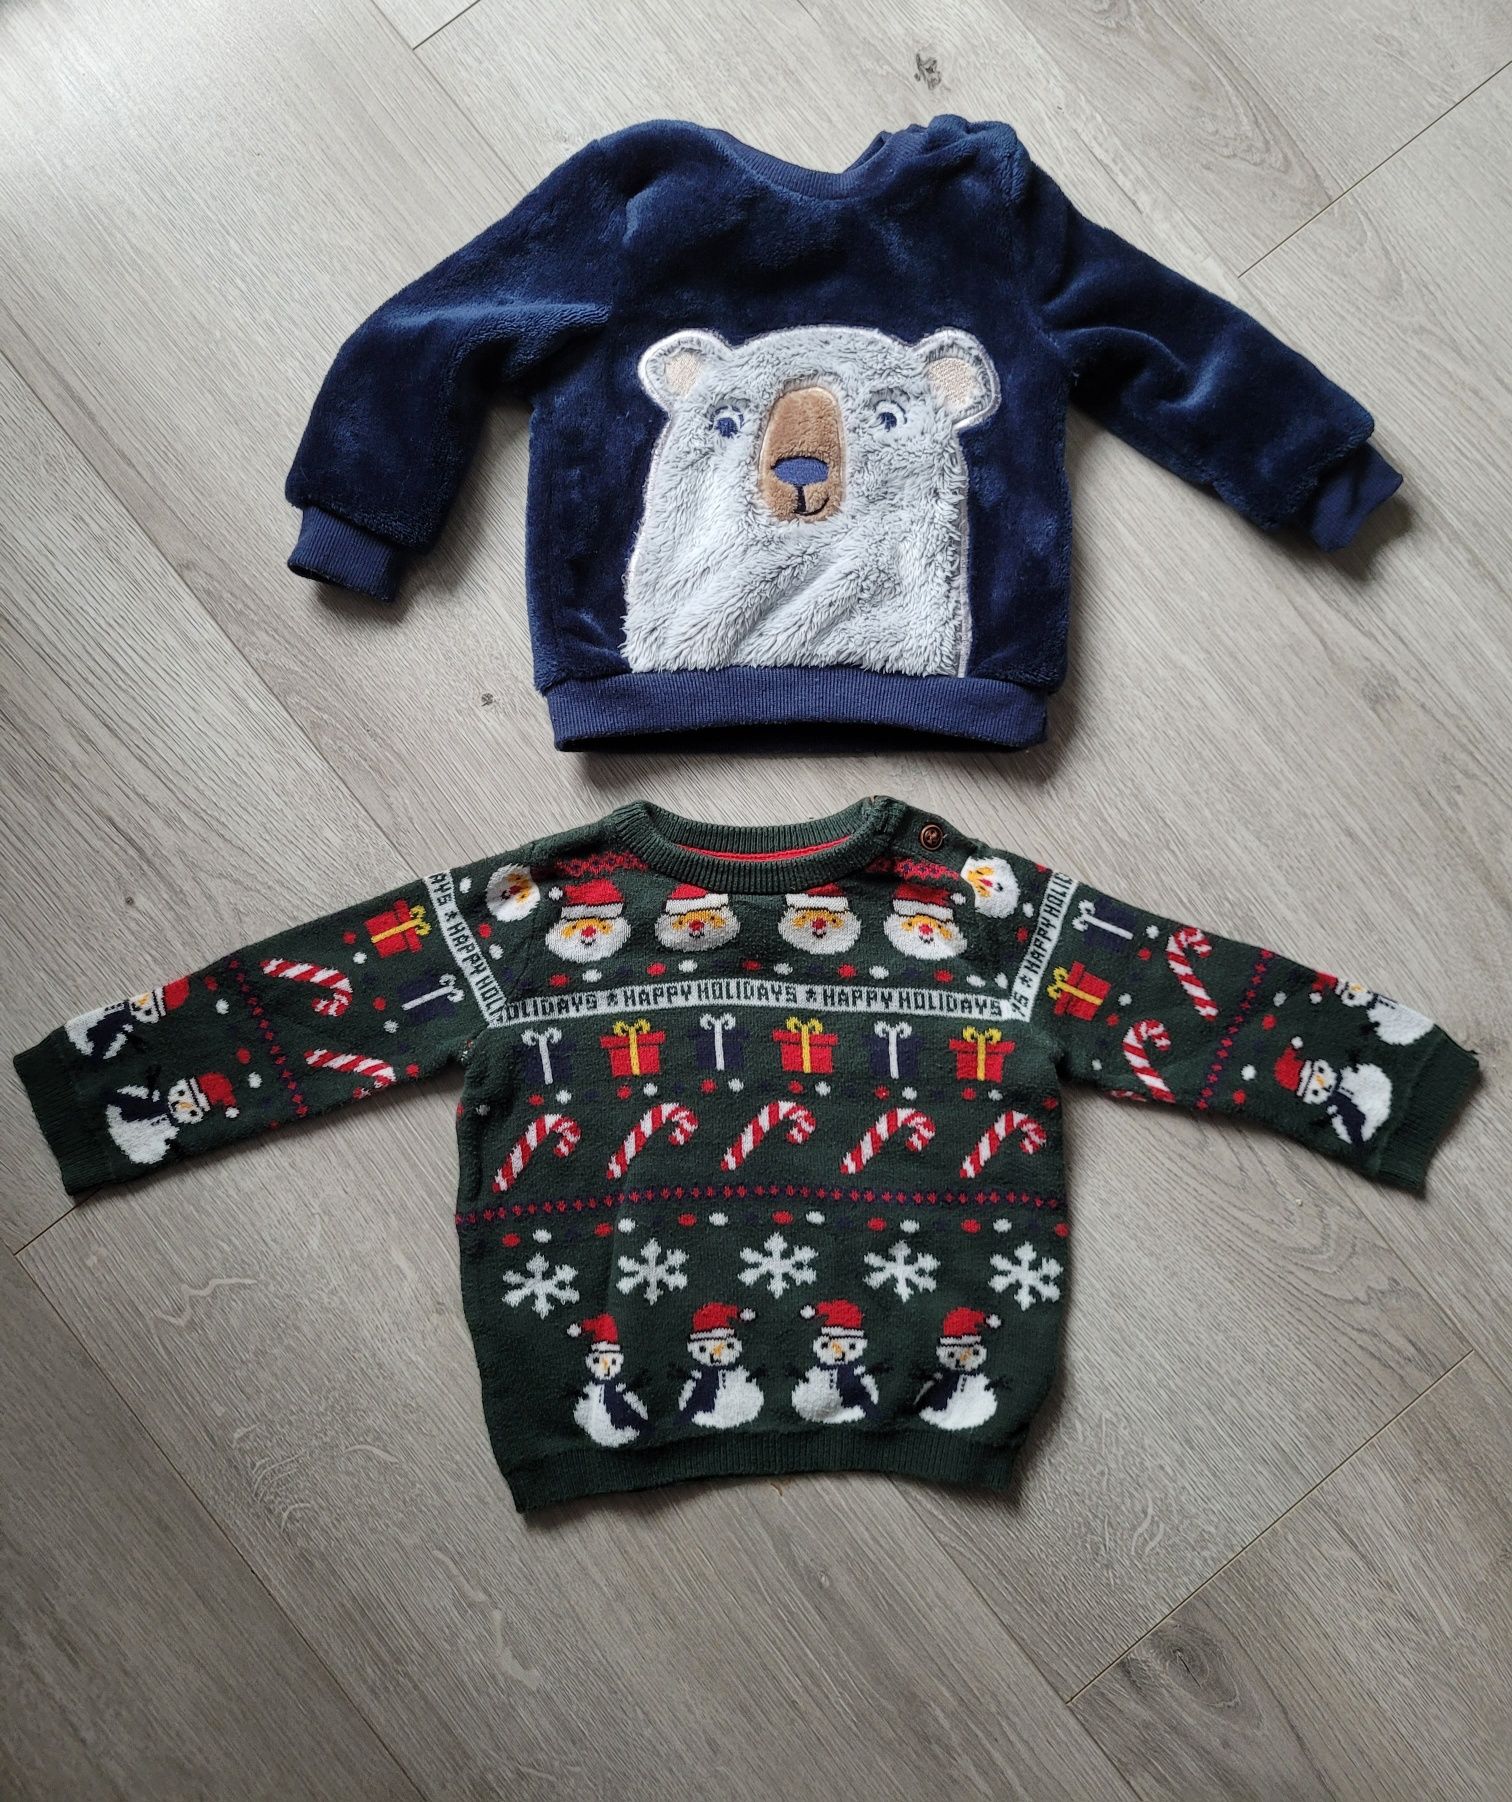 Zestaw 4 szt pajacyk sweterek świąteczny mikołaj bluzka bałwanek 74 80